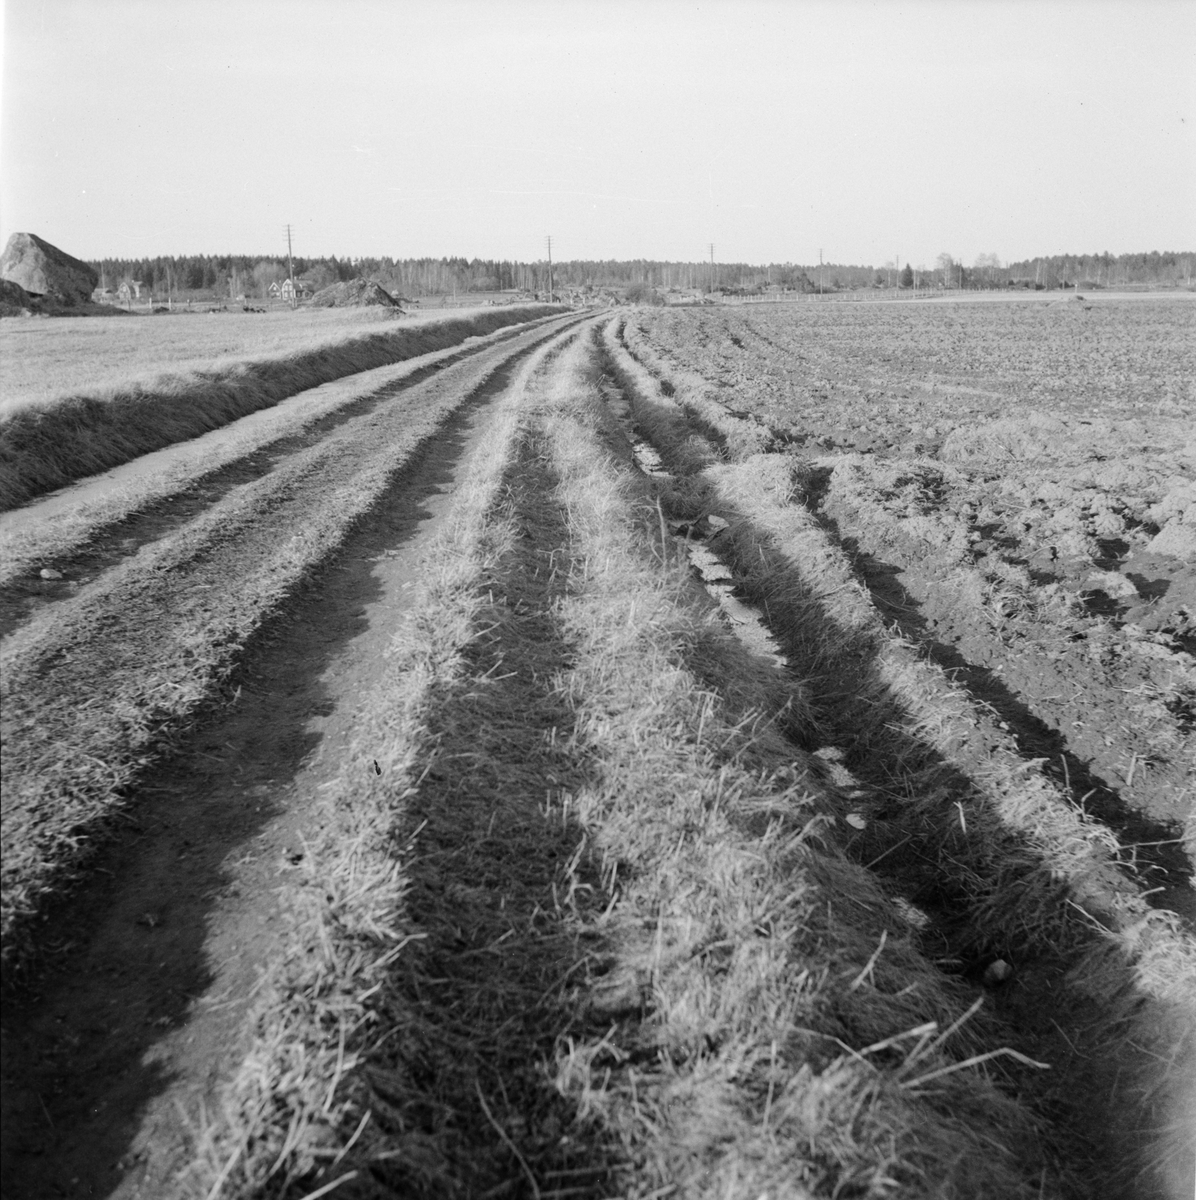 "Påskpromenaden", odlingslandskap, sannolikt Fittja socken, Uppland 1948